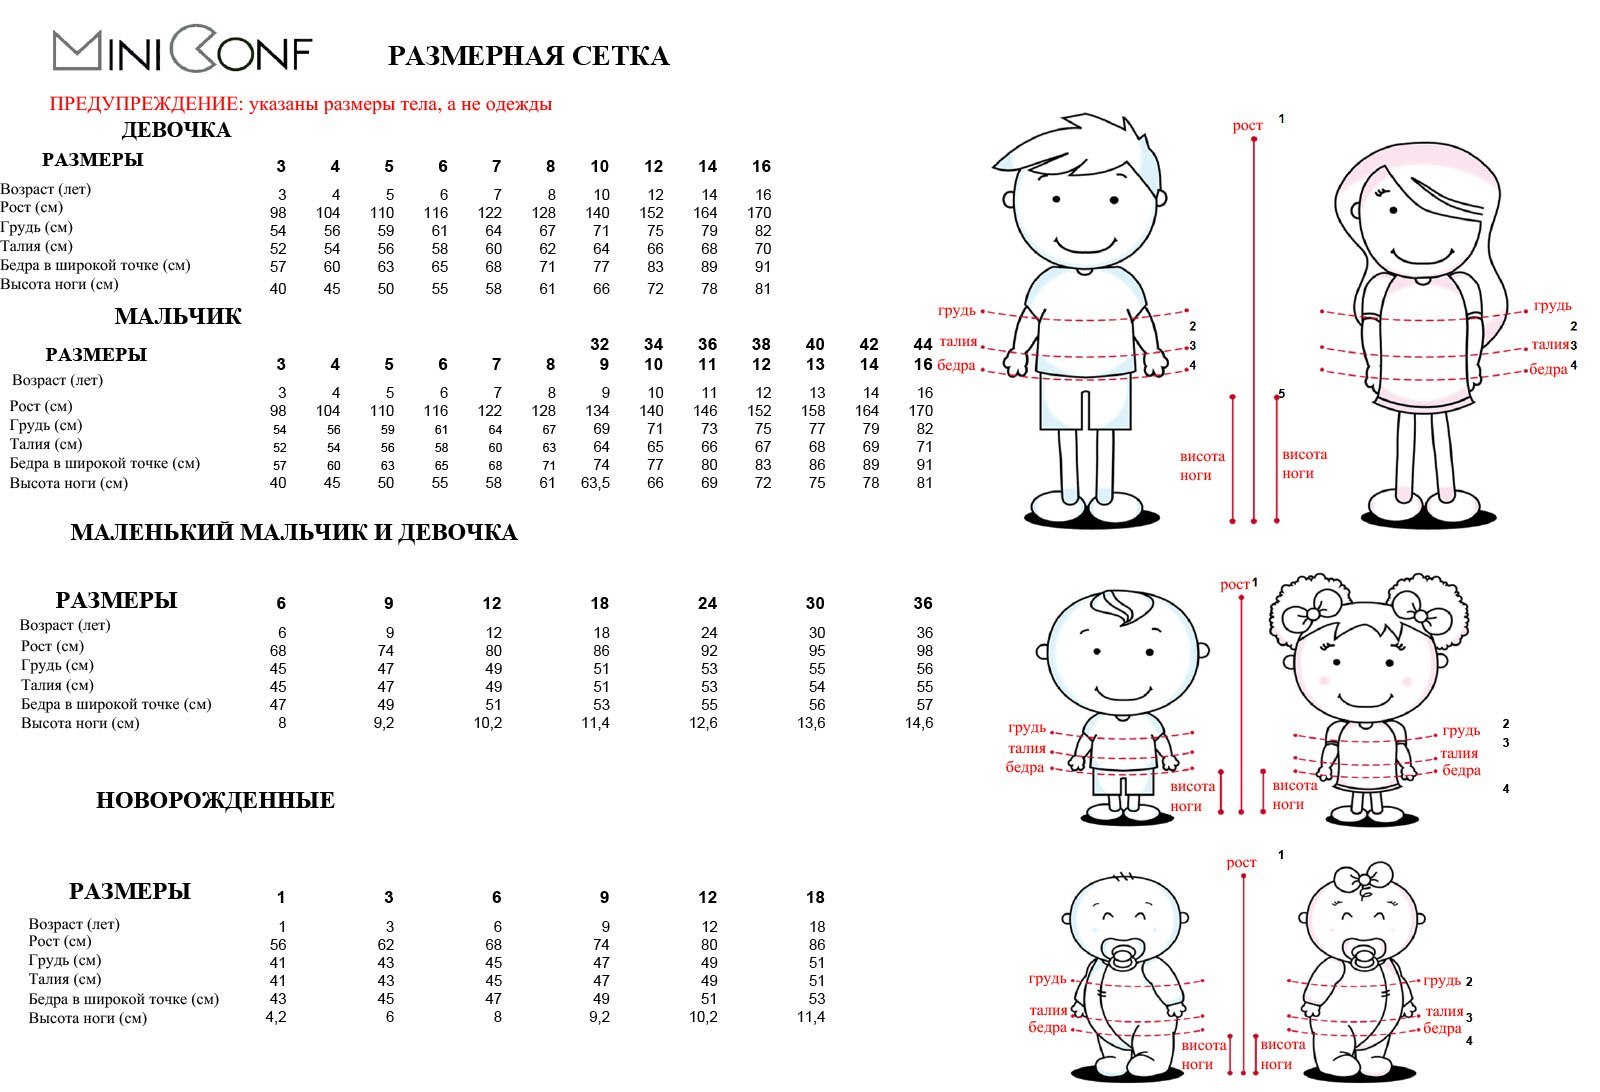 Размеры девочек по возрасту. Размерная таблица детской одежды от 0 до 1 года. Размерная таблица для детей по возрасту/рост. Размерный ряд по возрасту ребенка до года. Размерная сетка до 1 года девочке.